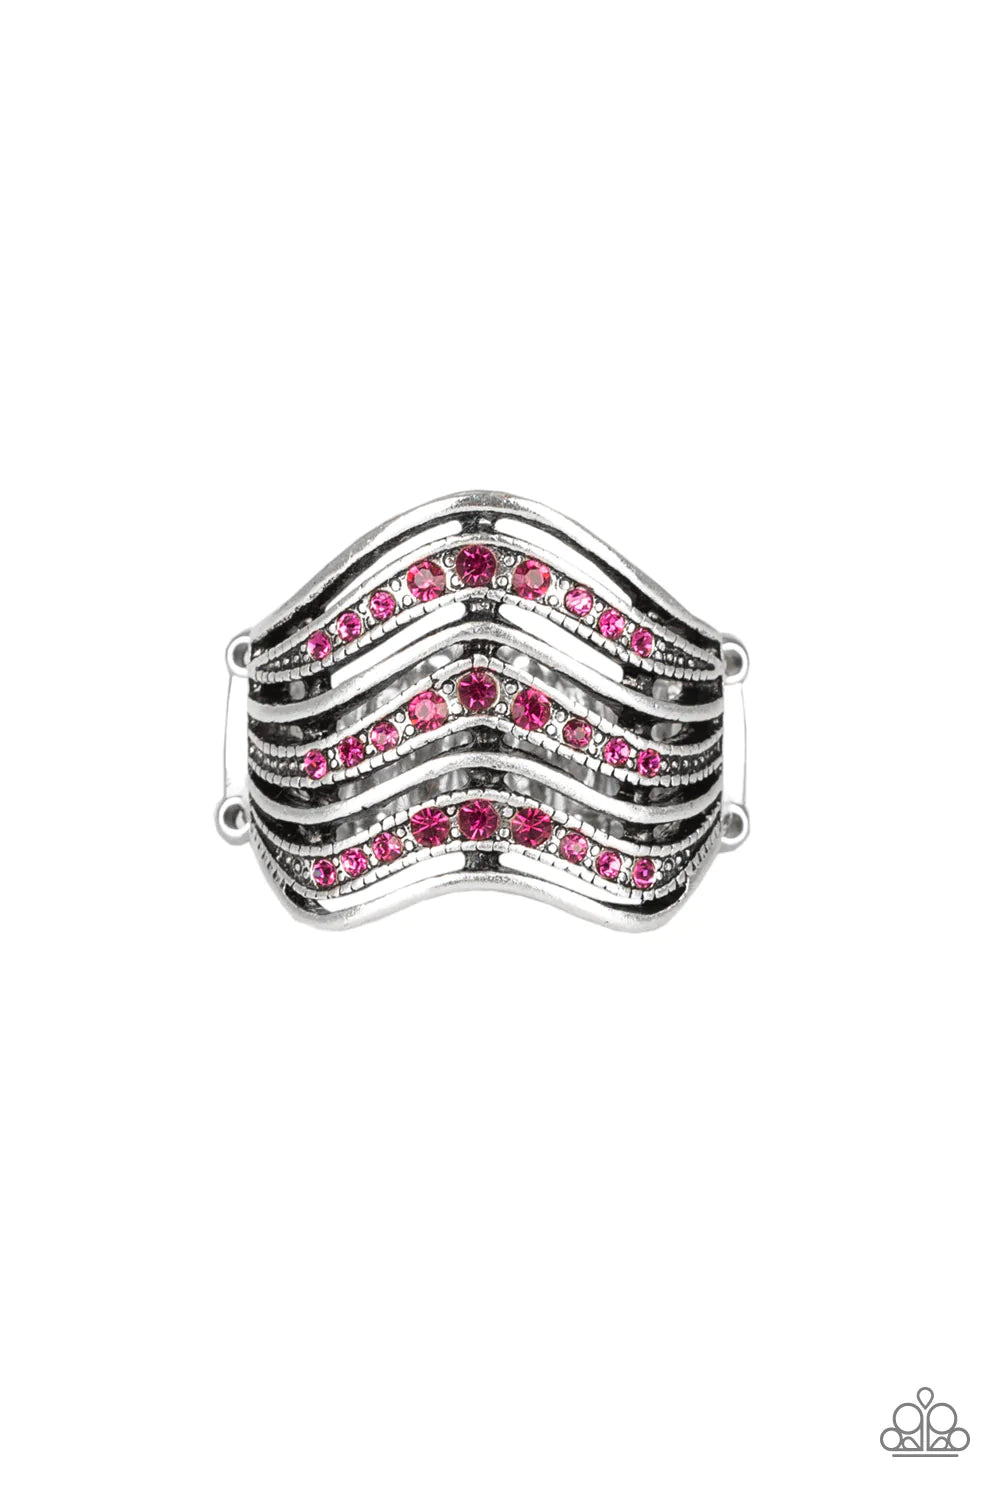 Paparazzi Ring ~ Fashion Finance - Pink